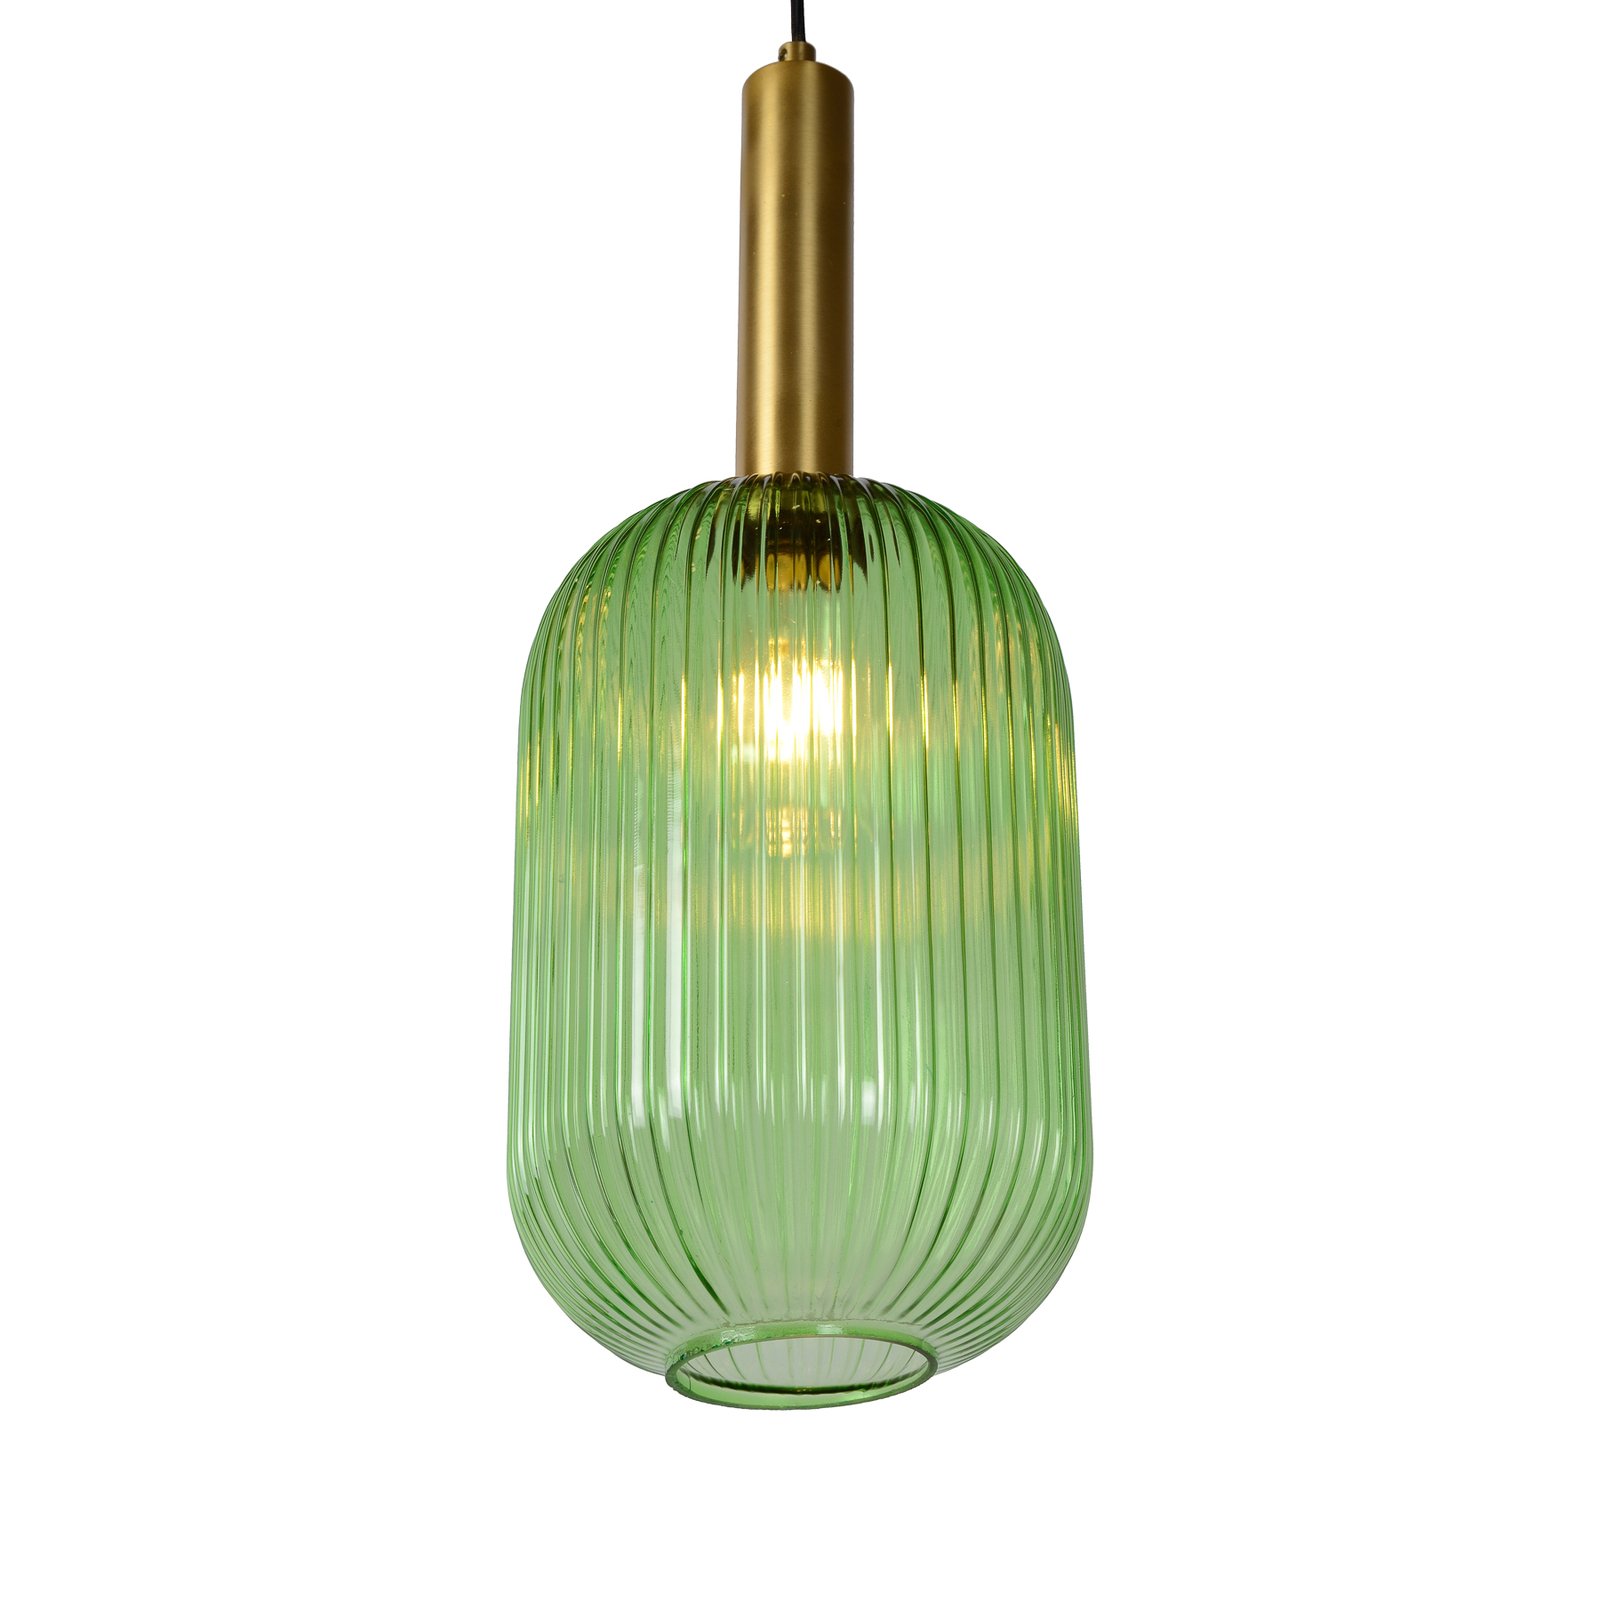 Maloto staklena viseća svjetiljka, Ø 20 cm, zelena